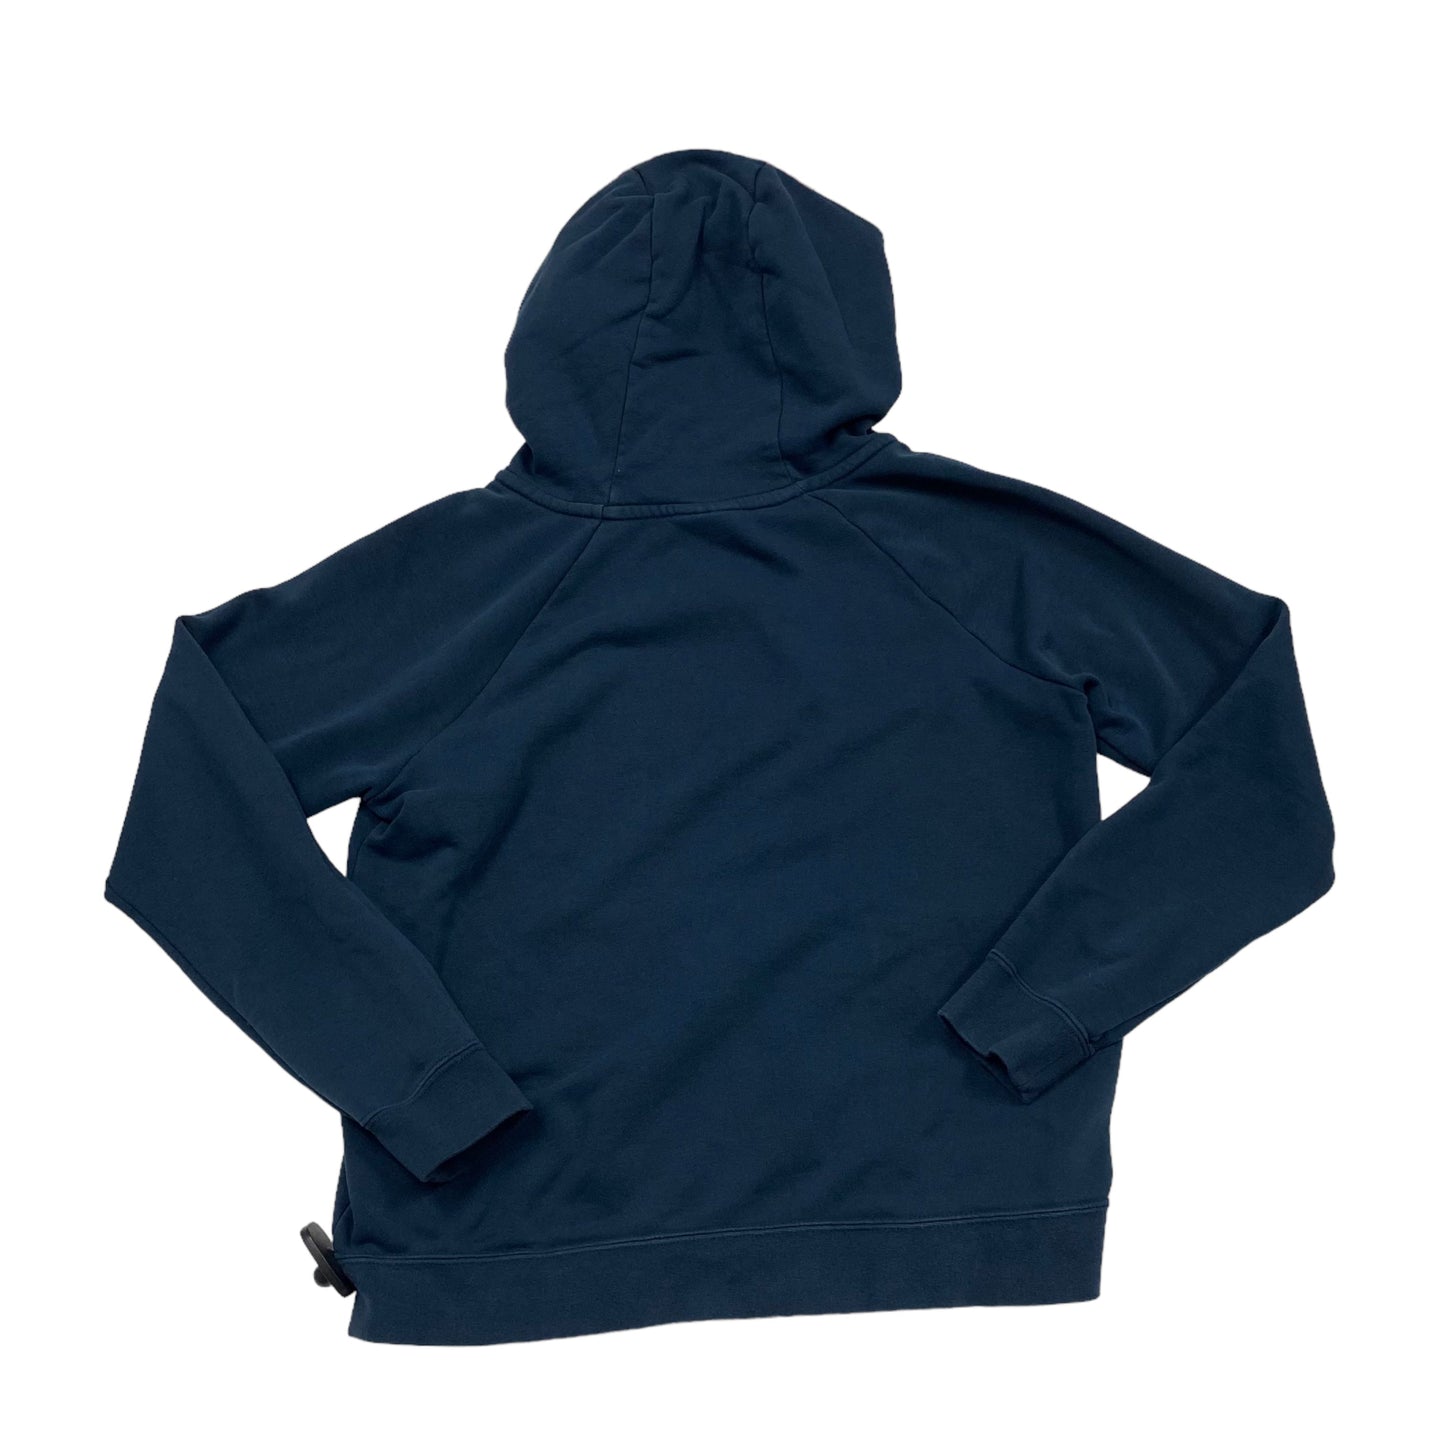 Navy Athletic Sweatshirt Hoodie Nike Apparel, Size S